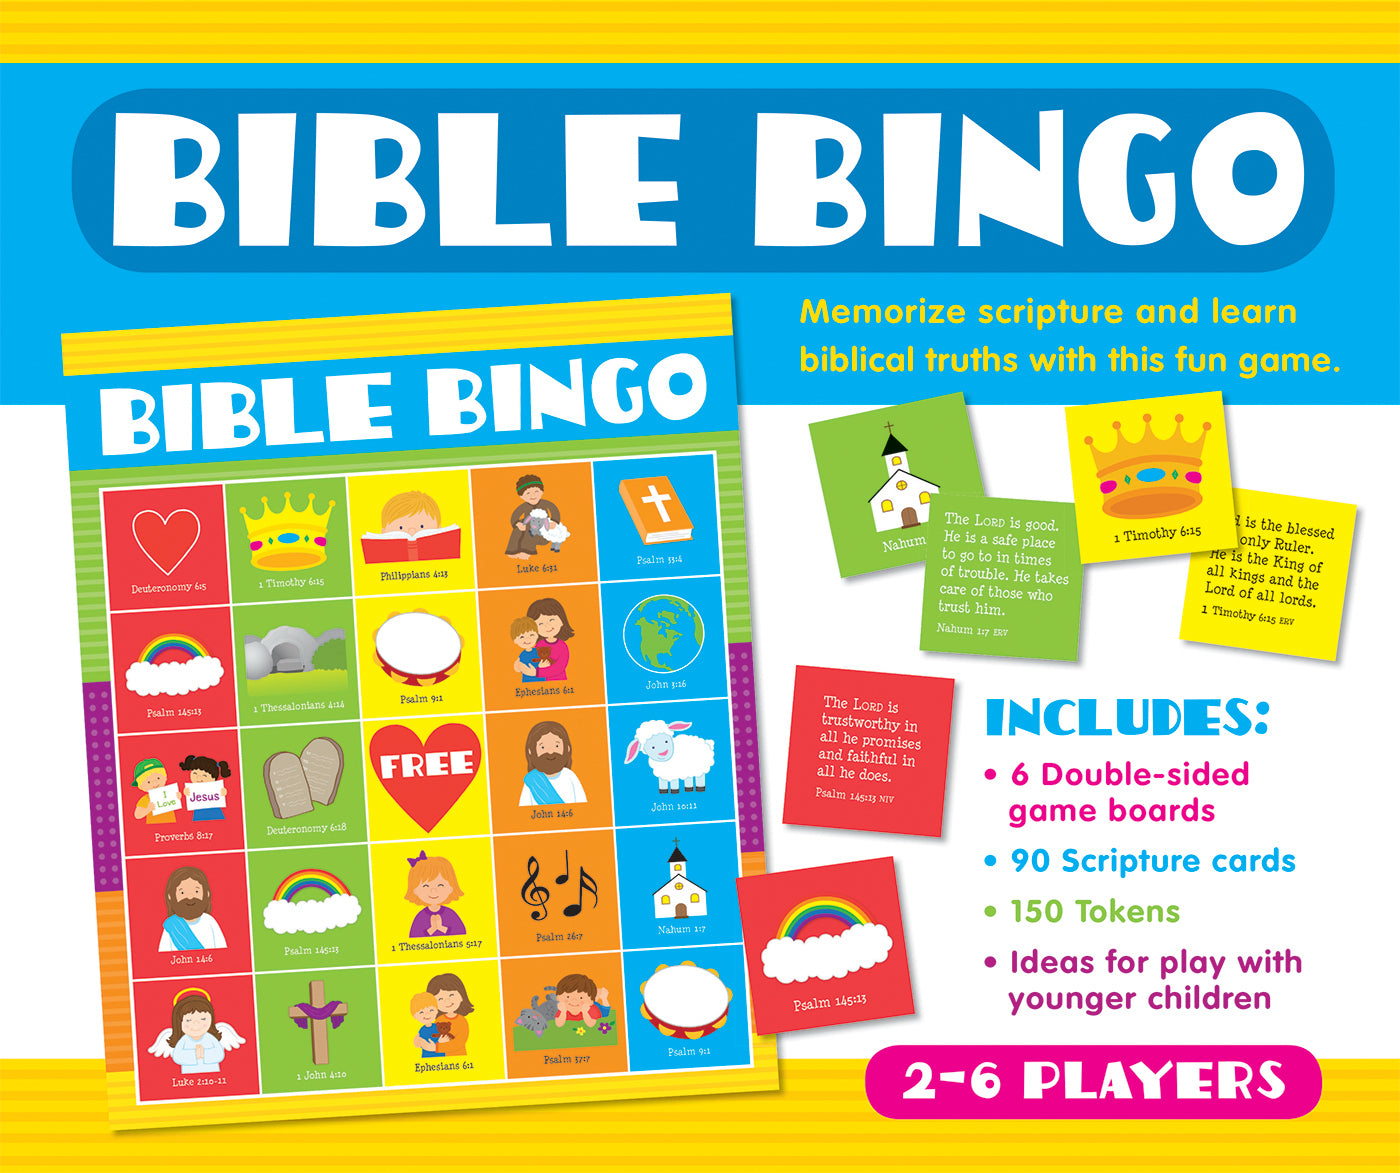 Image of Bible Bingo other